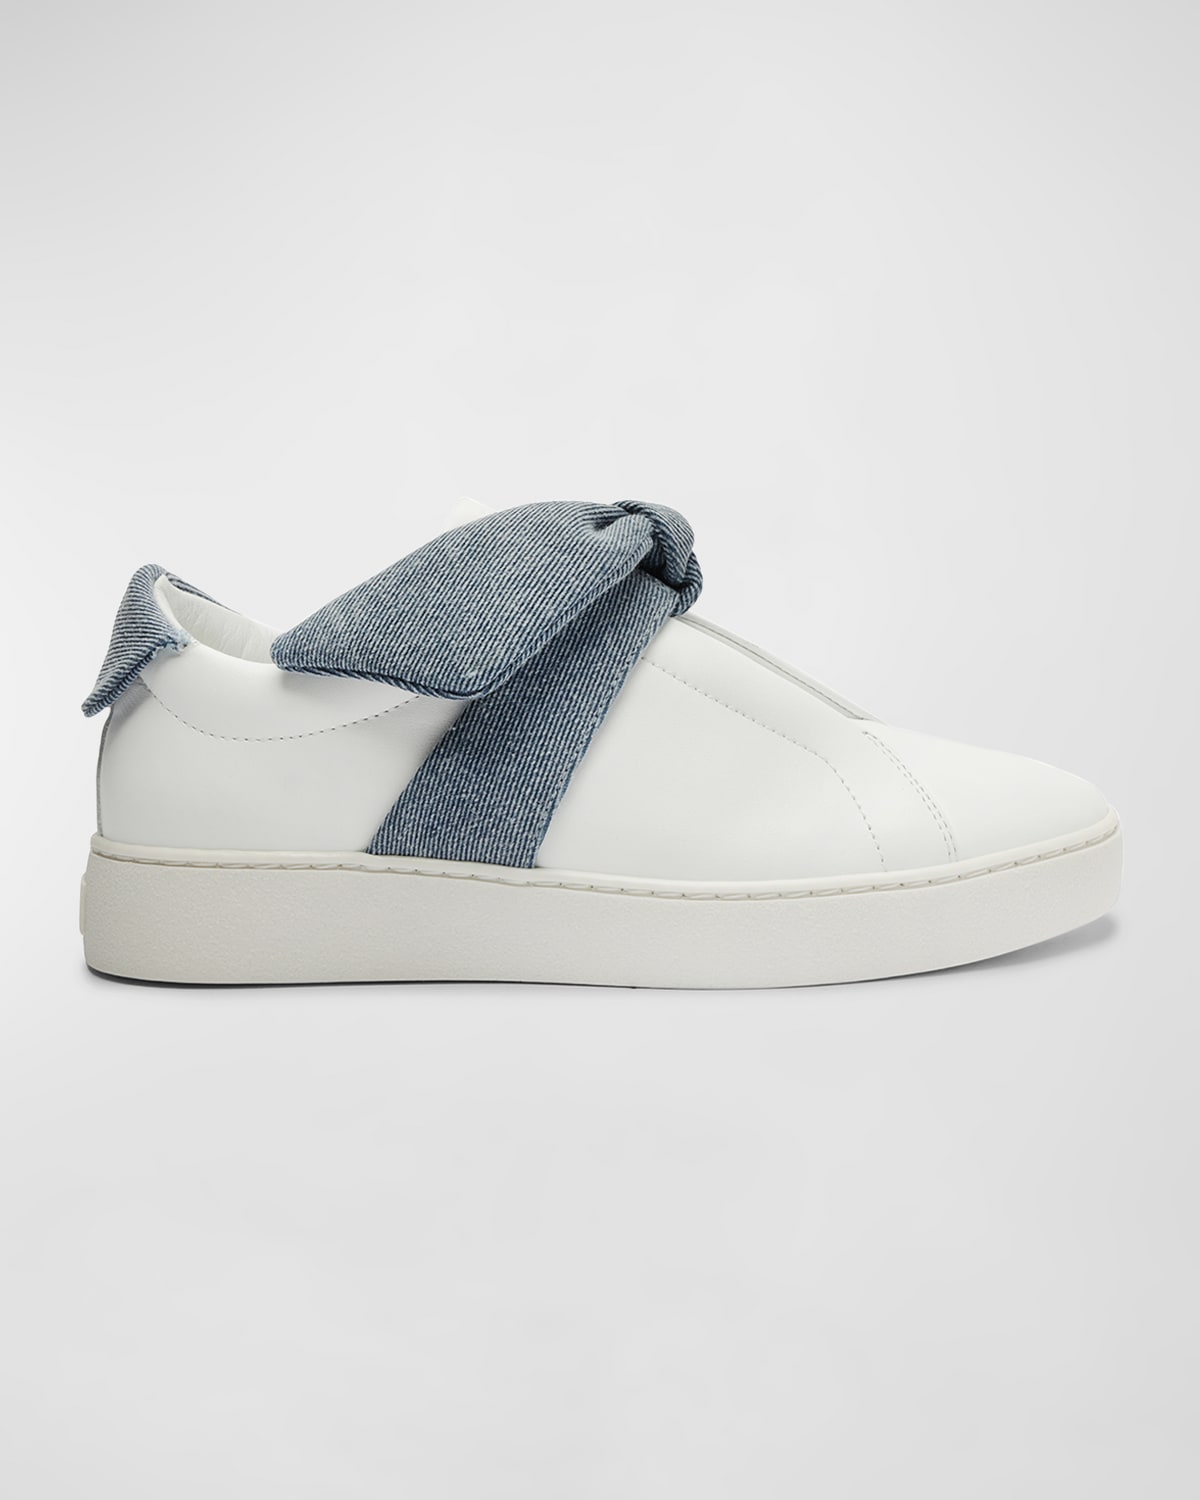 Alexandre Birman Clarita Denim Knot Slip-on Sneakers In White/denim